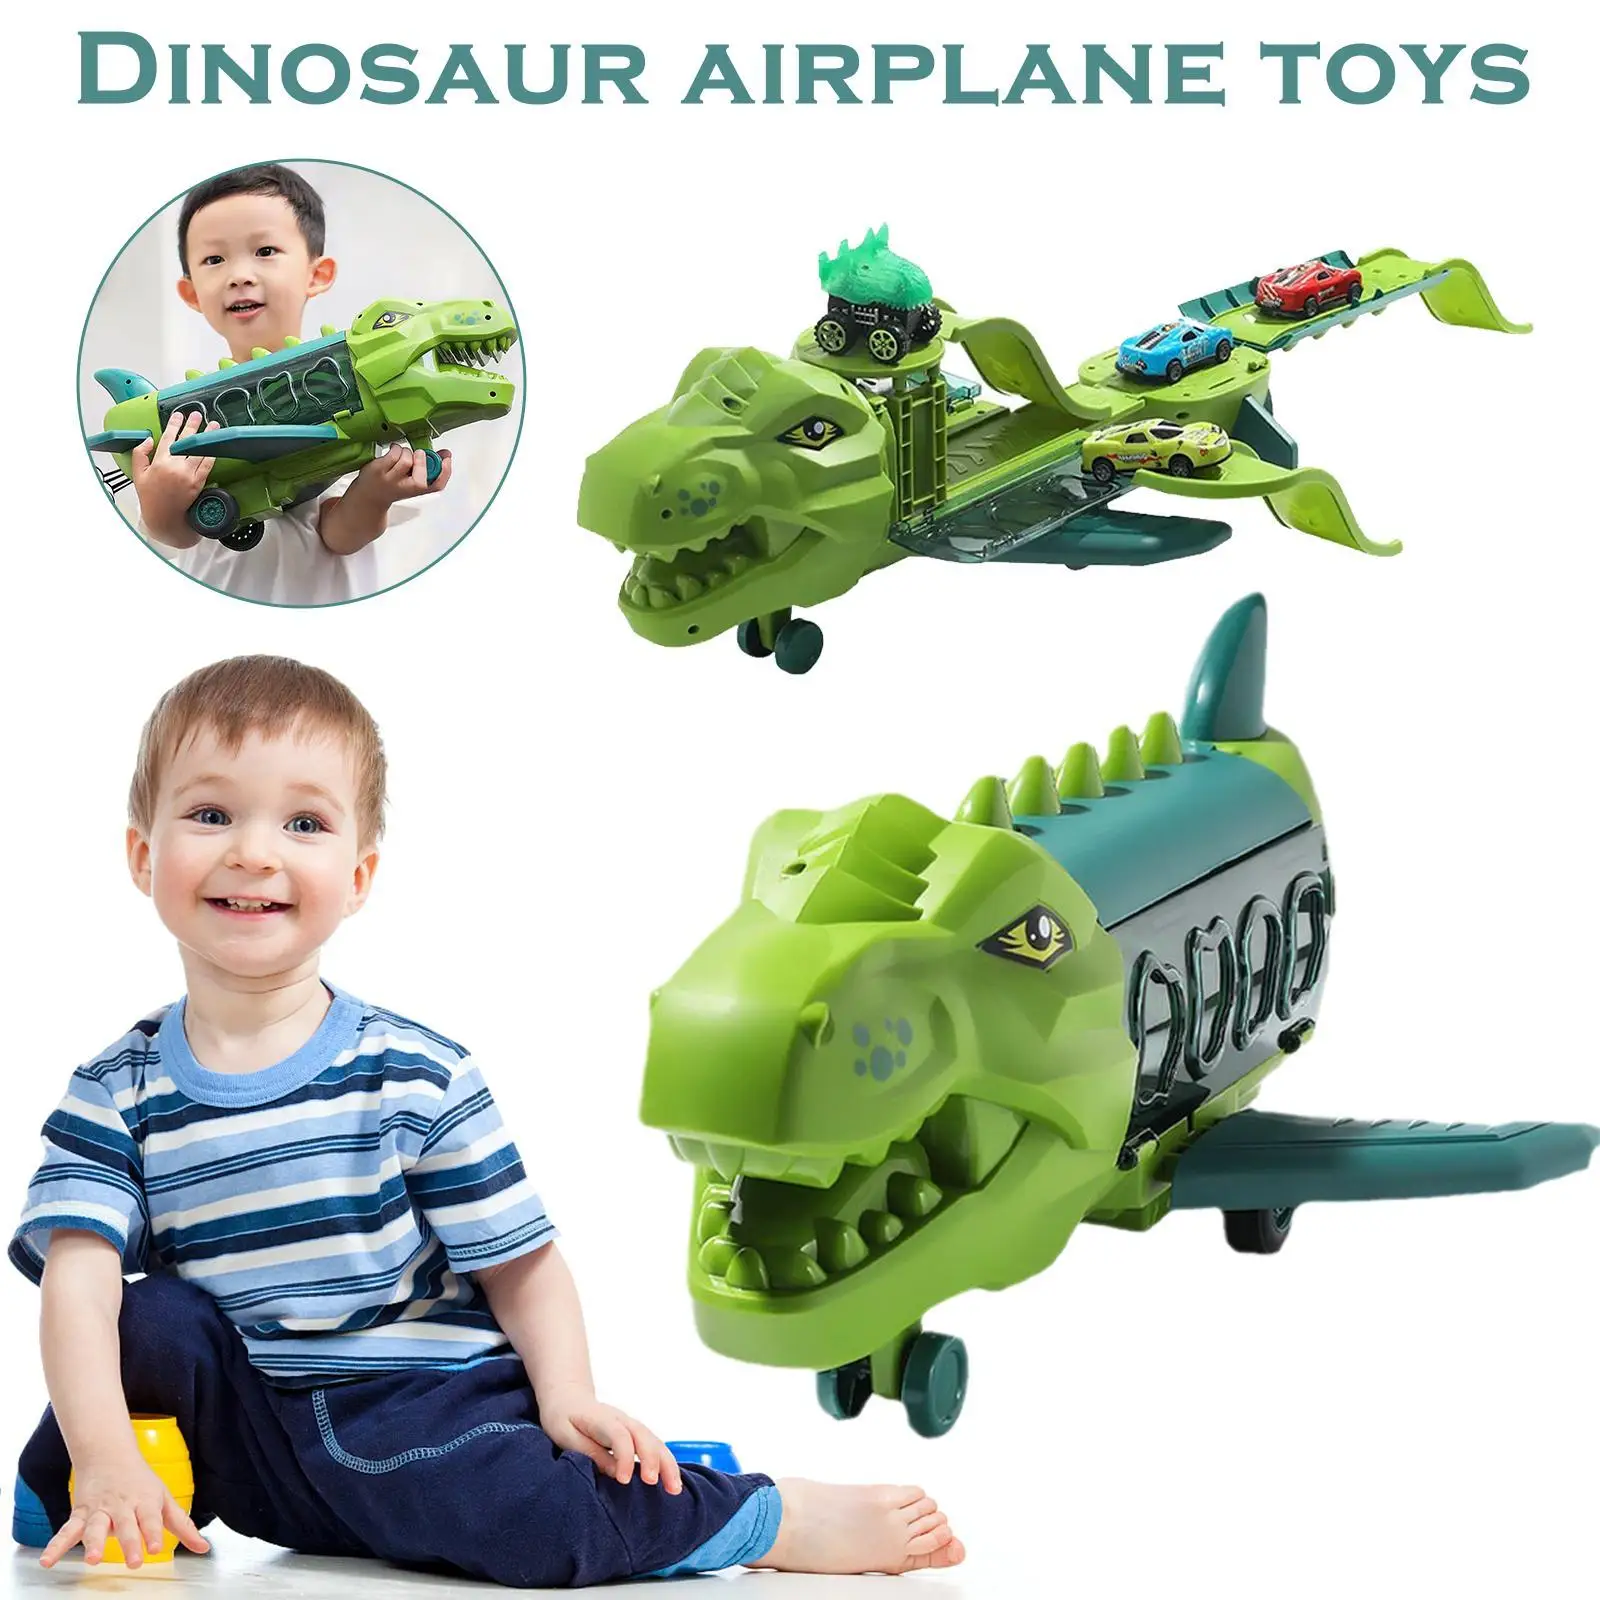 

Автомобильная игрушка Rex, Динозавры юрского периода, транспортный автомобиль, переносчик динозавров, грузовик, игрушка, Детский лайнер, игр...